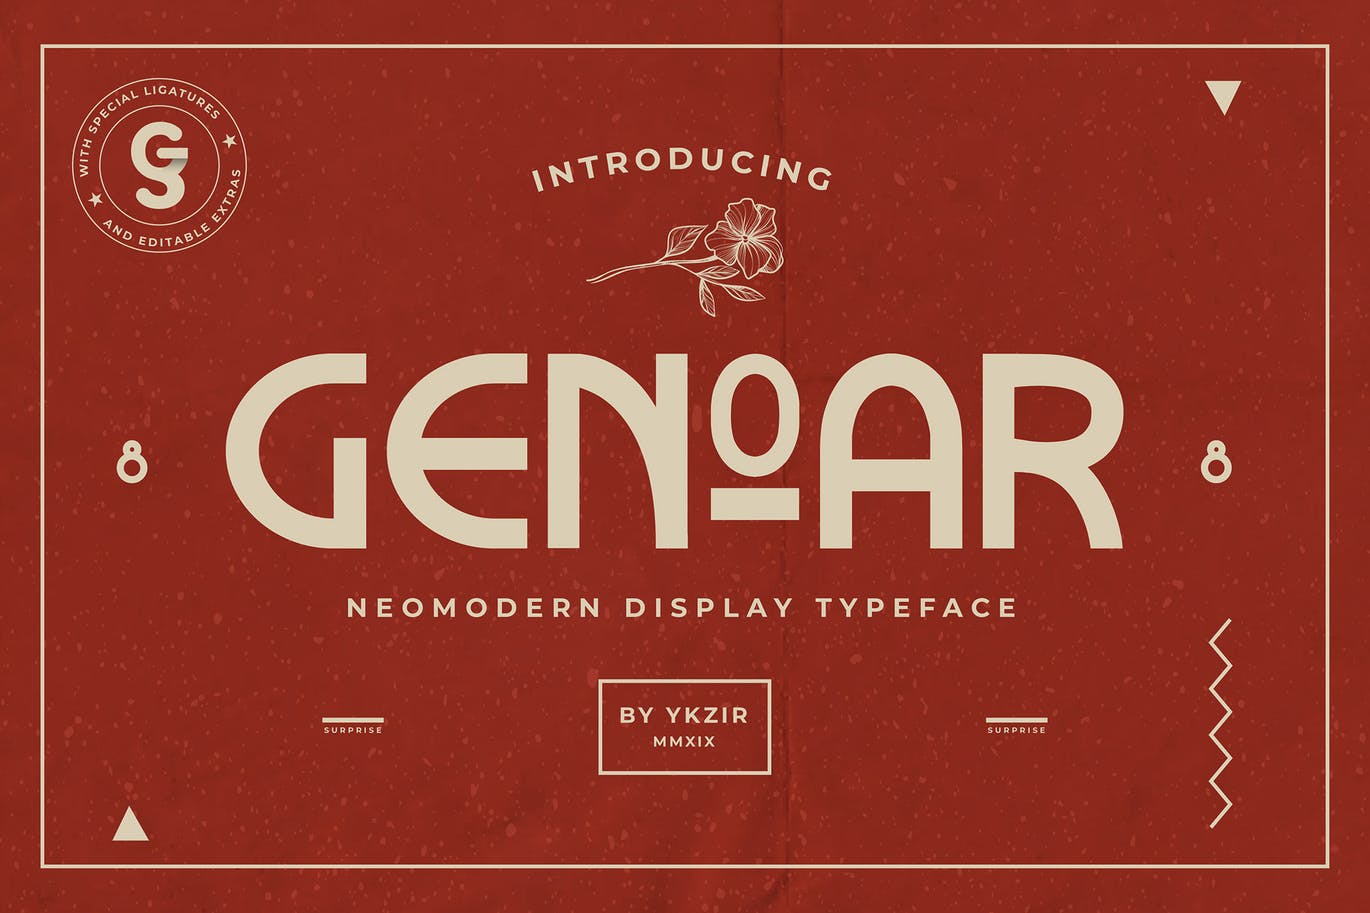 现代未来主义/当代艺术混合风格英文无衬线字体 Genoar Typeface插图